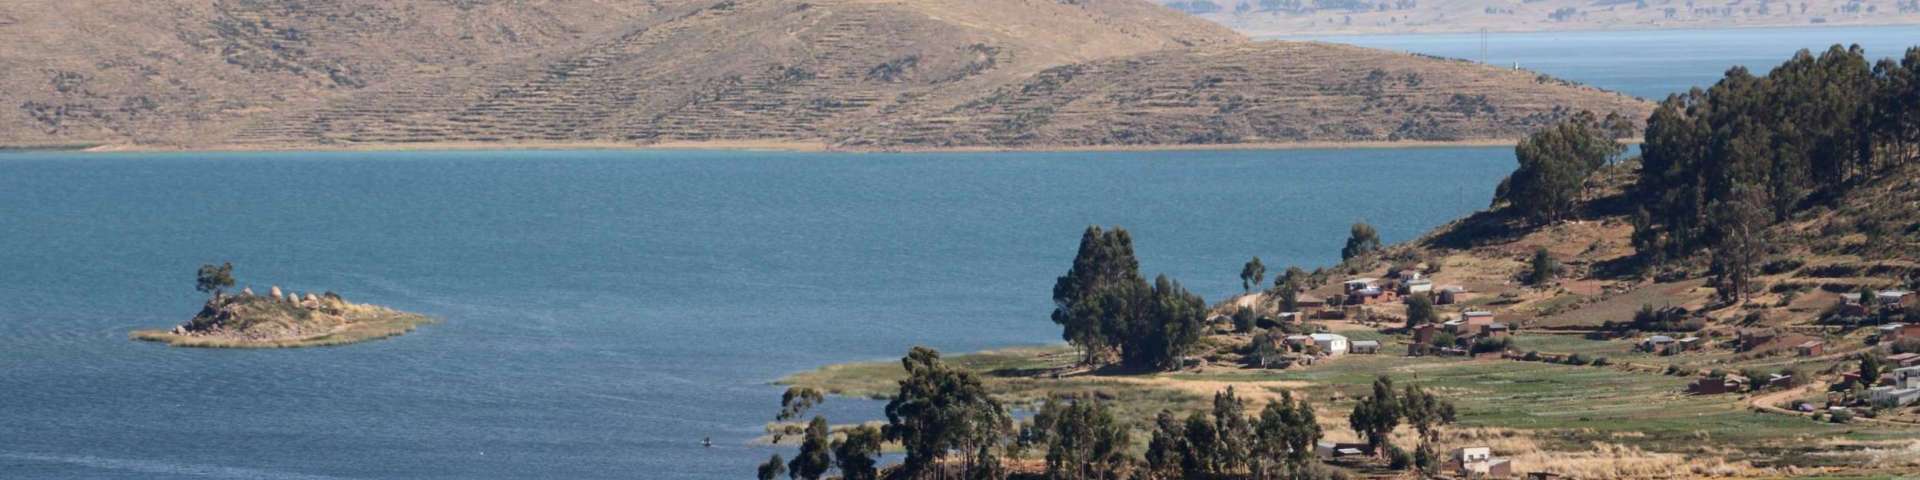 Alrededor del Lago Titicaca